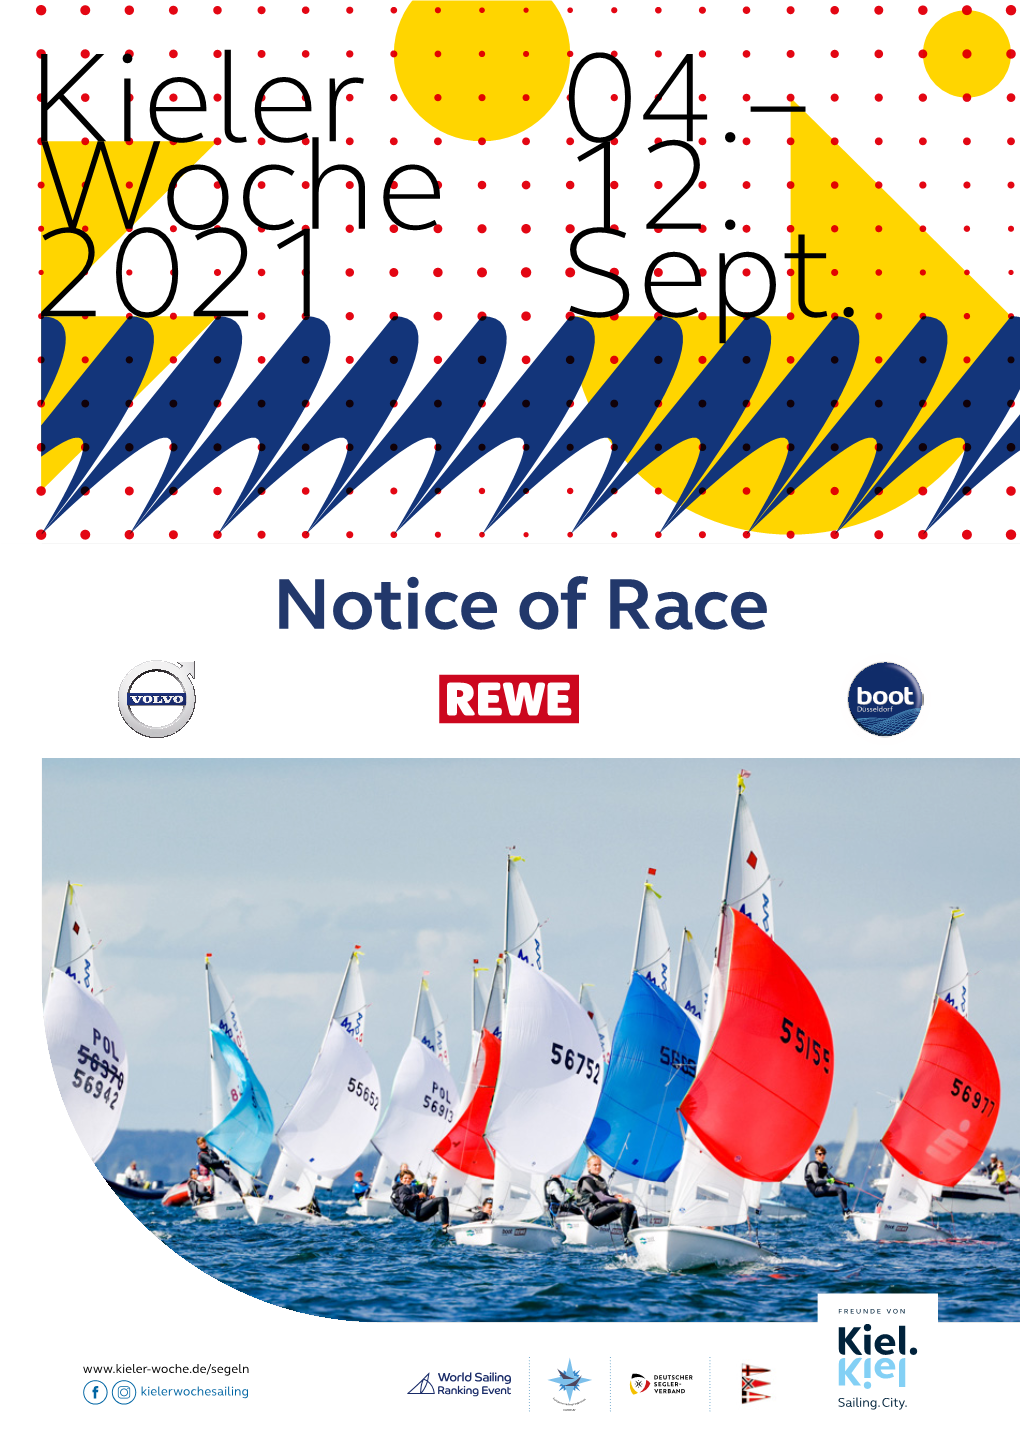 Notice of Race Kieler Woche 2021 REWE Ist Wieder Mit an Bord